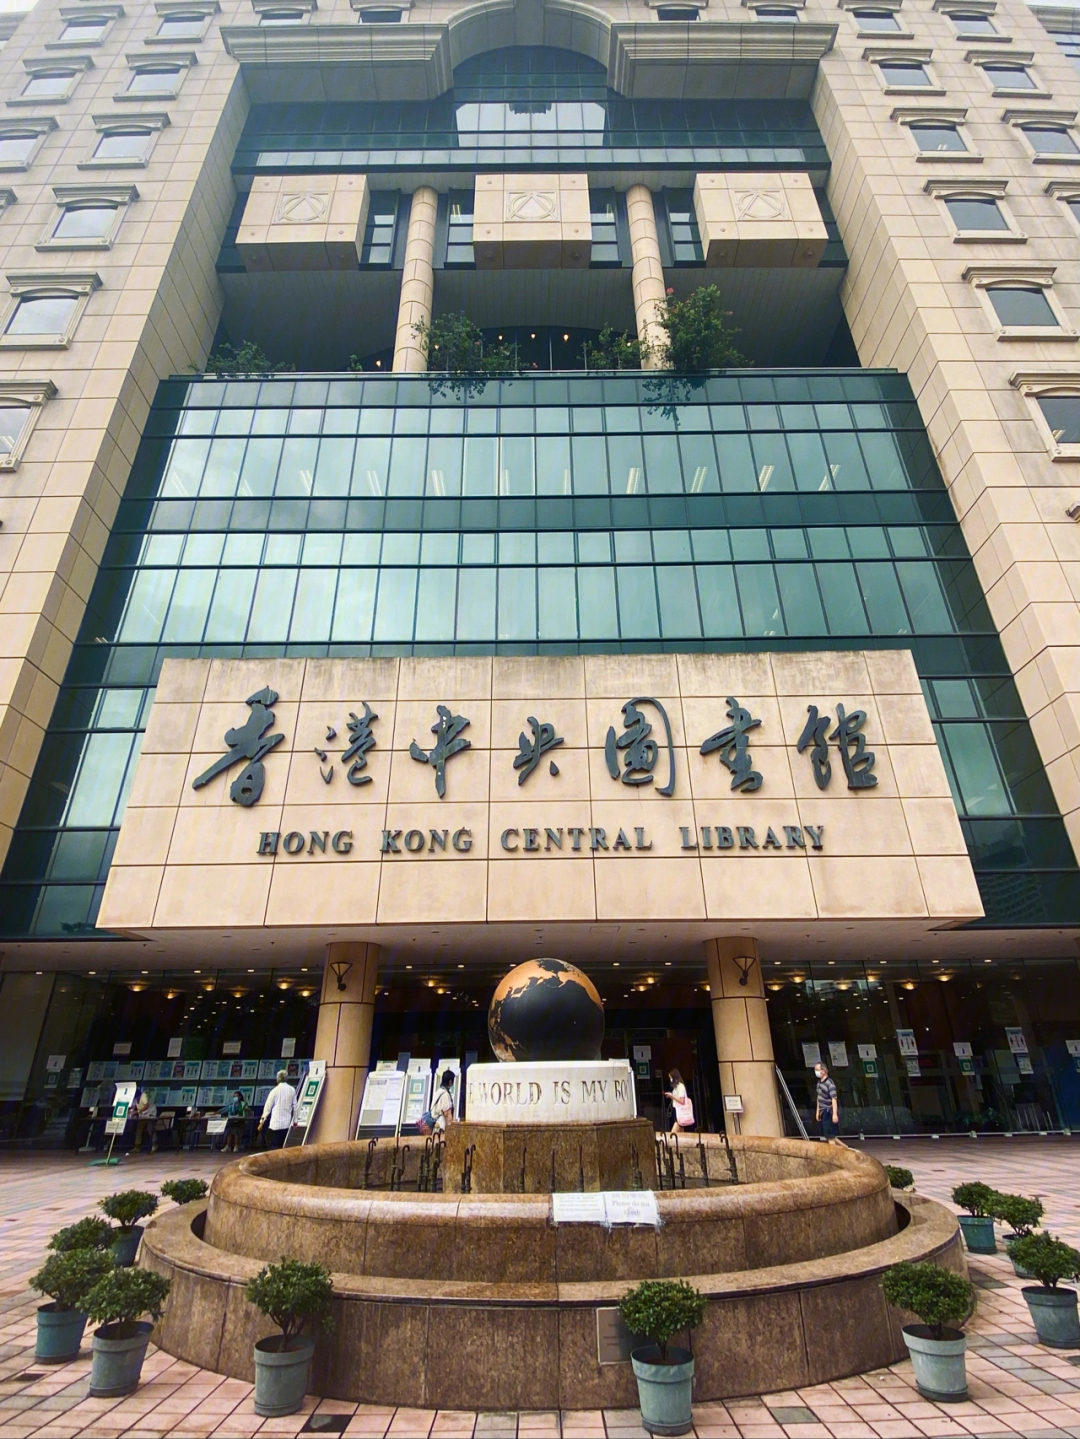 香港图书馆怎么画图片